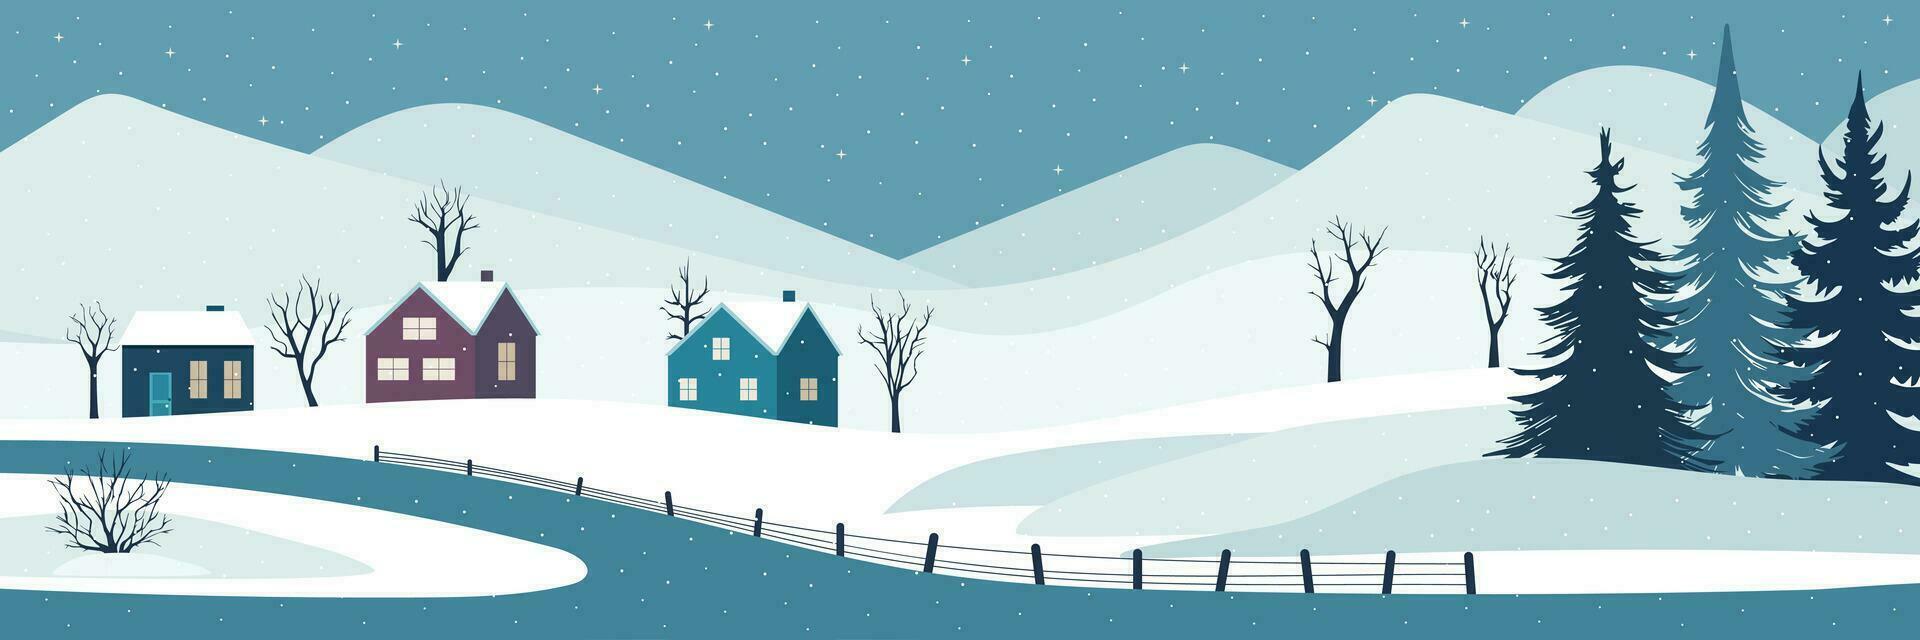 accogliente inverno paesaggio. inverno Visualizza con pino albero, case, albero e neve nel piatto stile. vettore illustrazione.